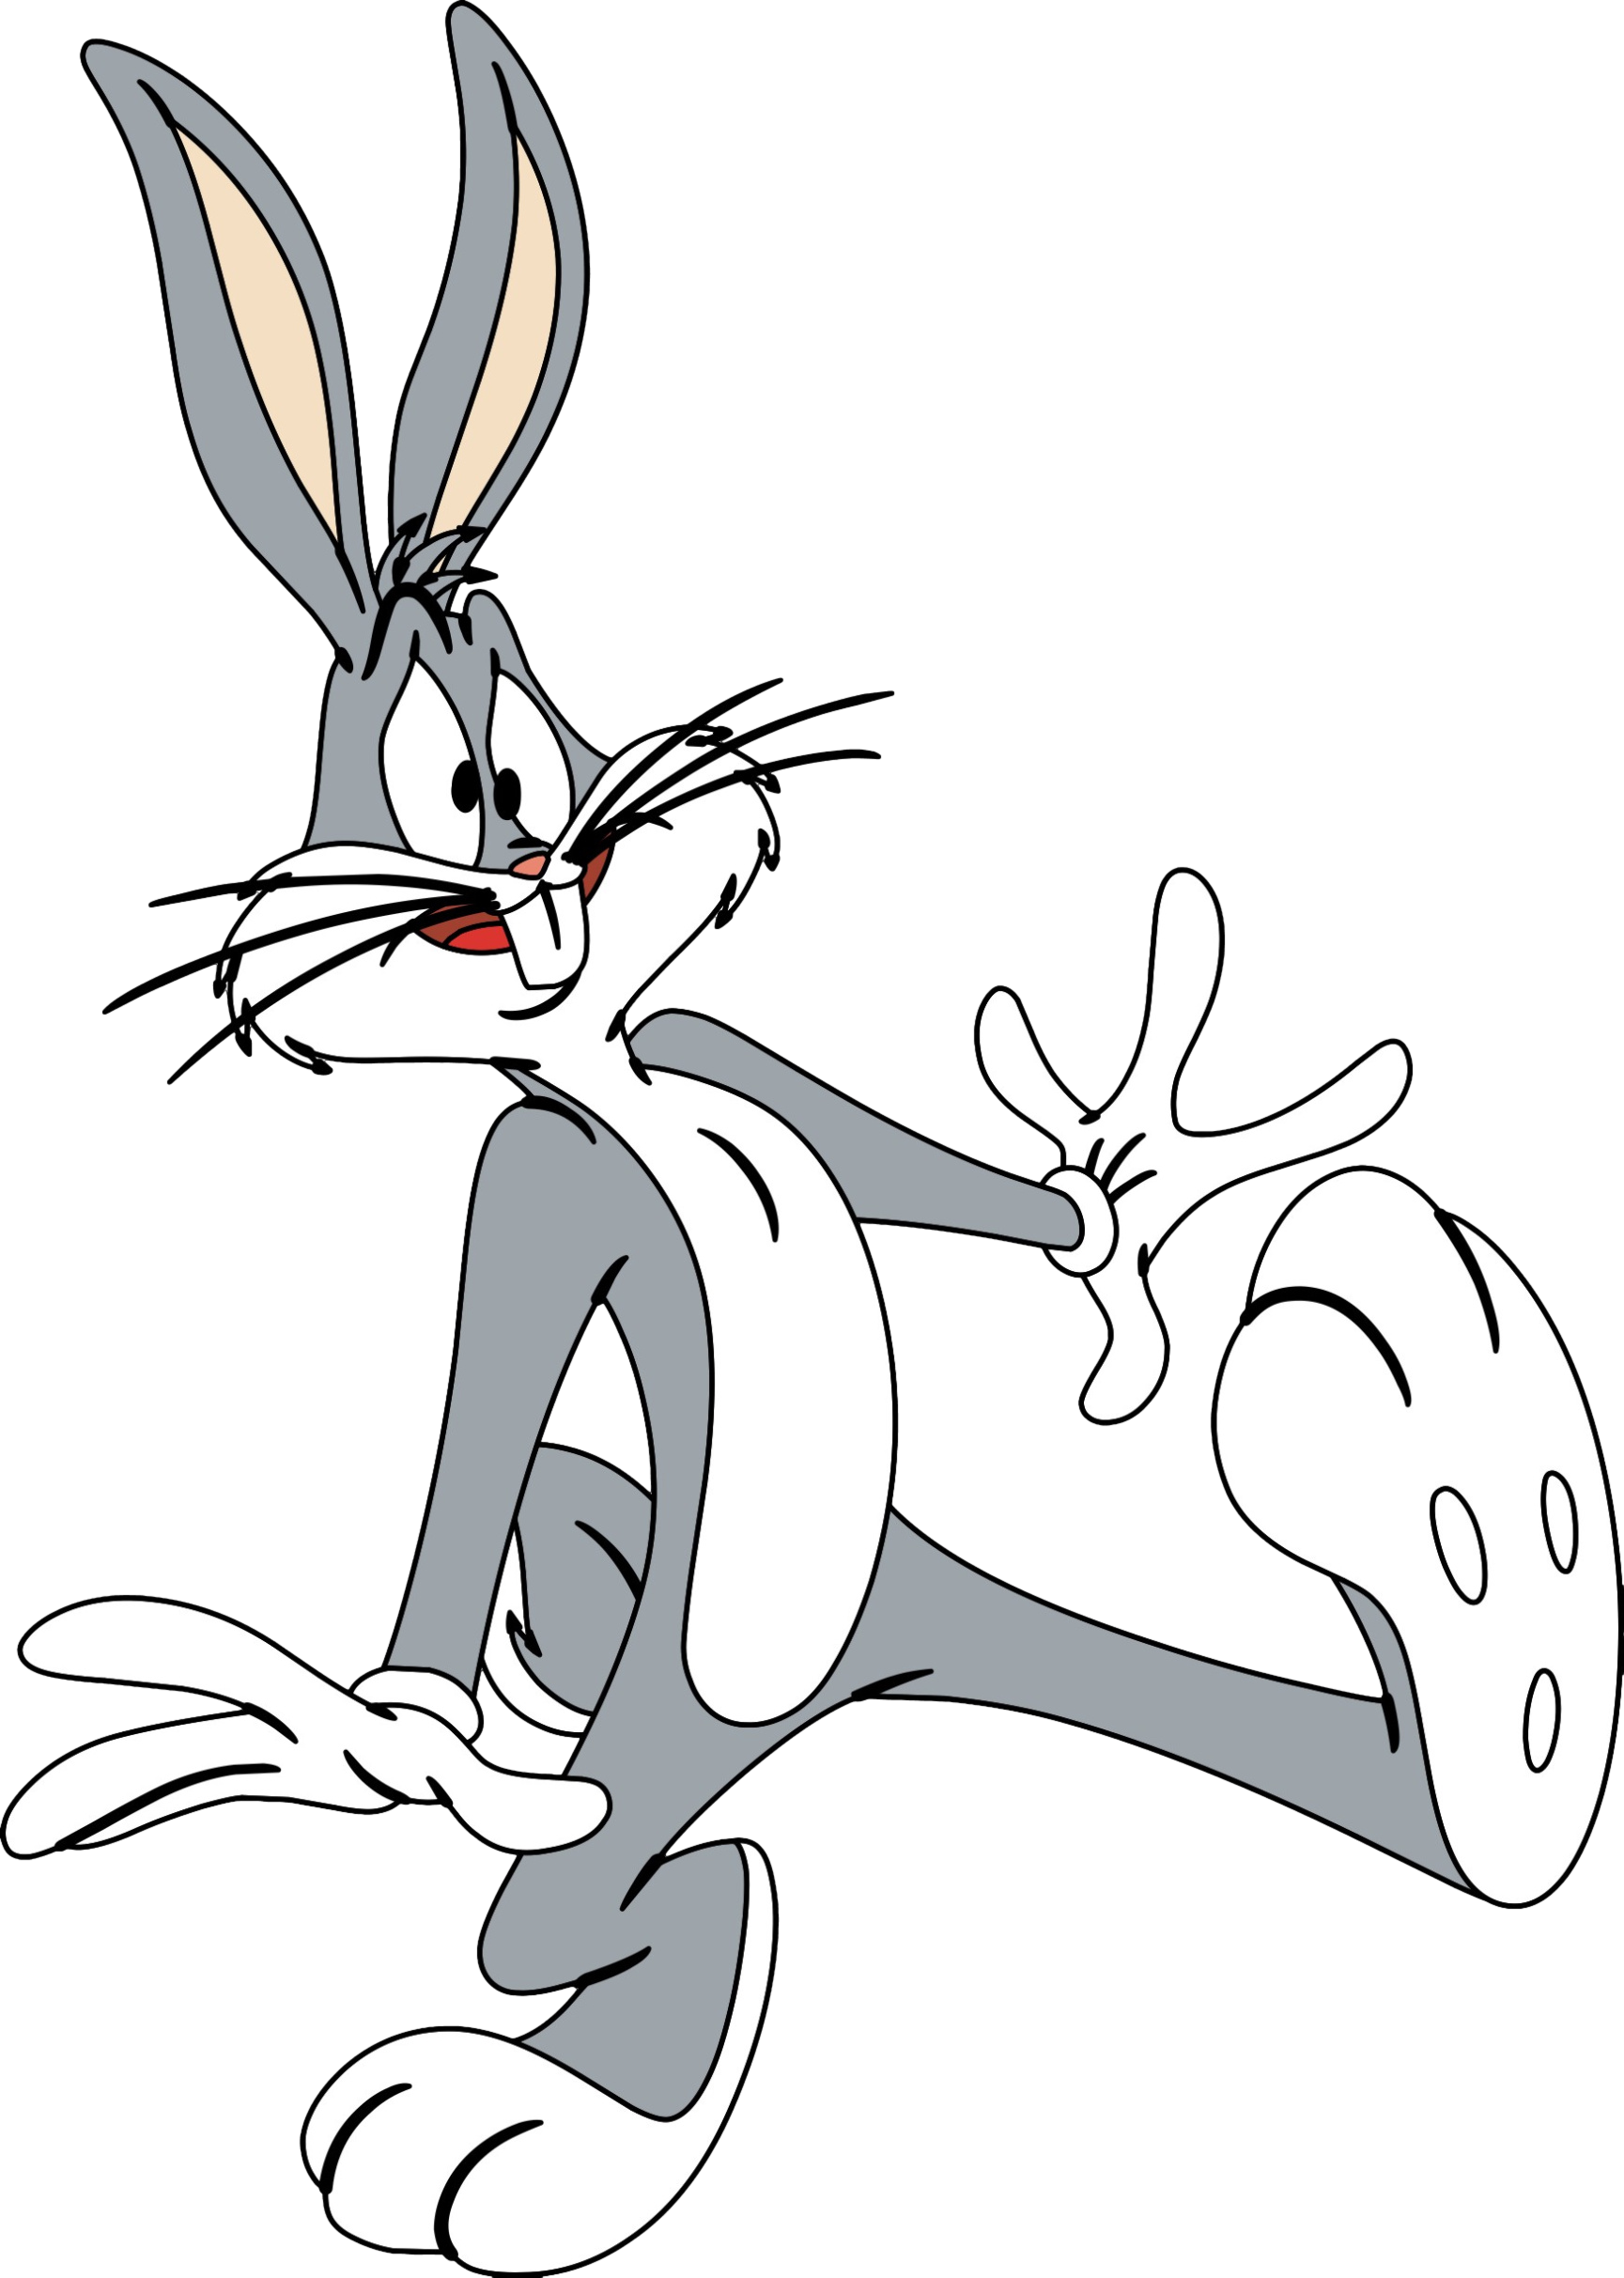 Я самый заяц бакс бани. Кролик Банни мультика Багз. Б̆̈ӑ̈к̆̈с̆̈ б̆̈ӑ̈н̆̈н̆̈й̈. Кролик из мультика Багз Банни.